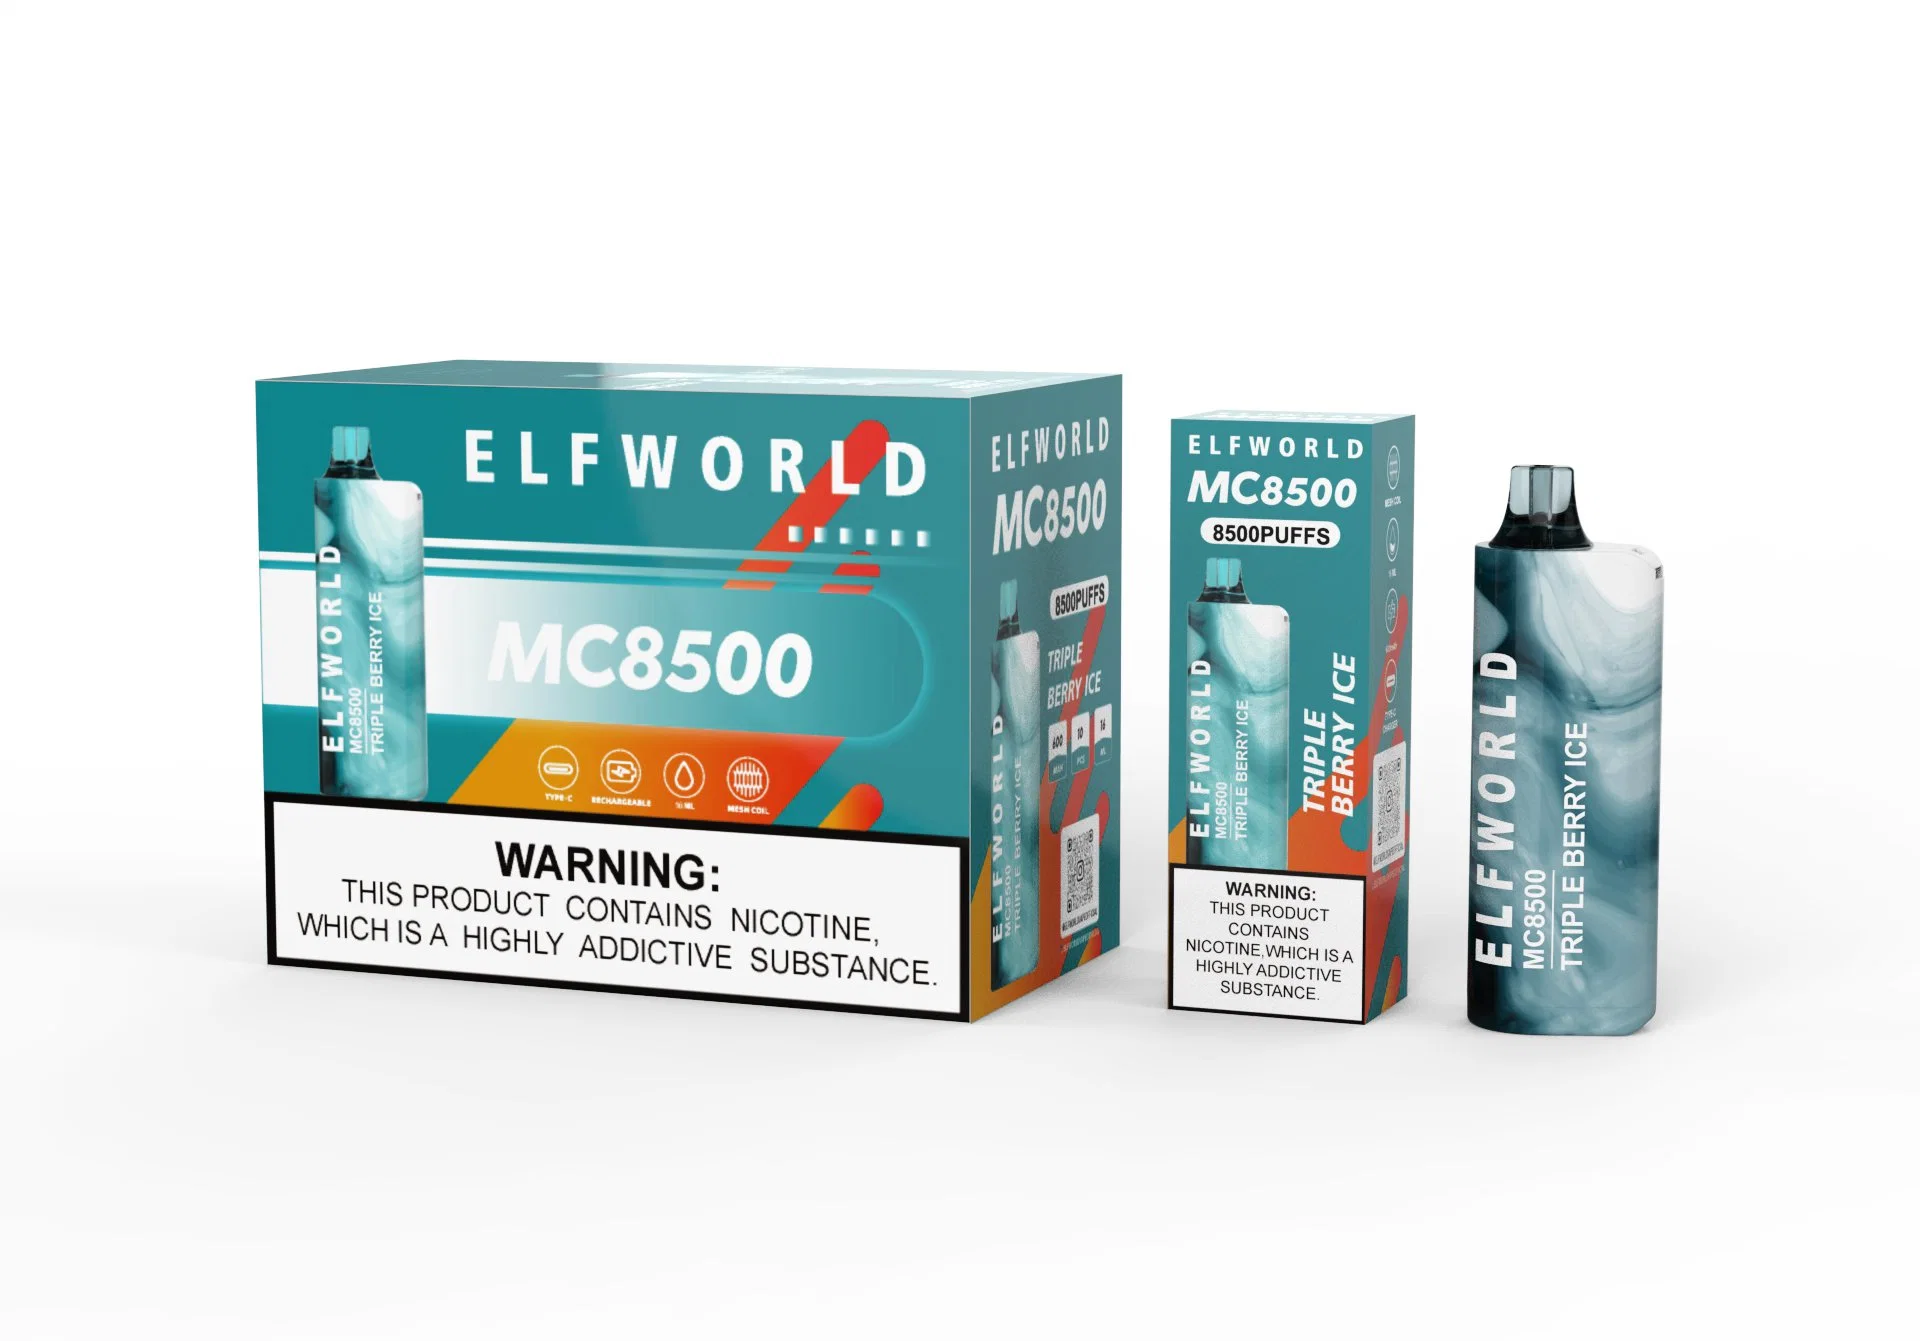 Compre Elfworld Mc 8500 dispositivo de Pape descartável Elf World original 8500 Puffs descartáveis Pape descartável tabagismo Pape Atacado I Mc. De Pape Wape